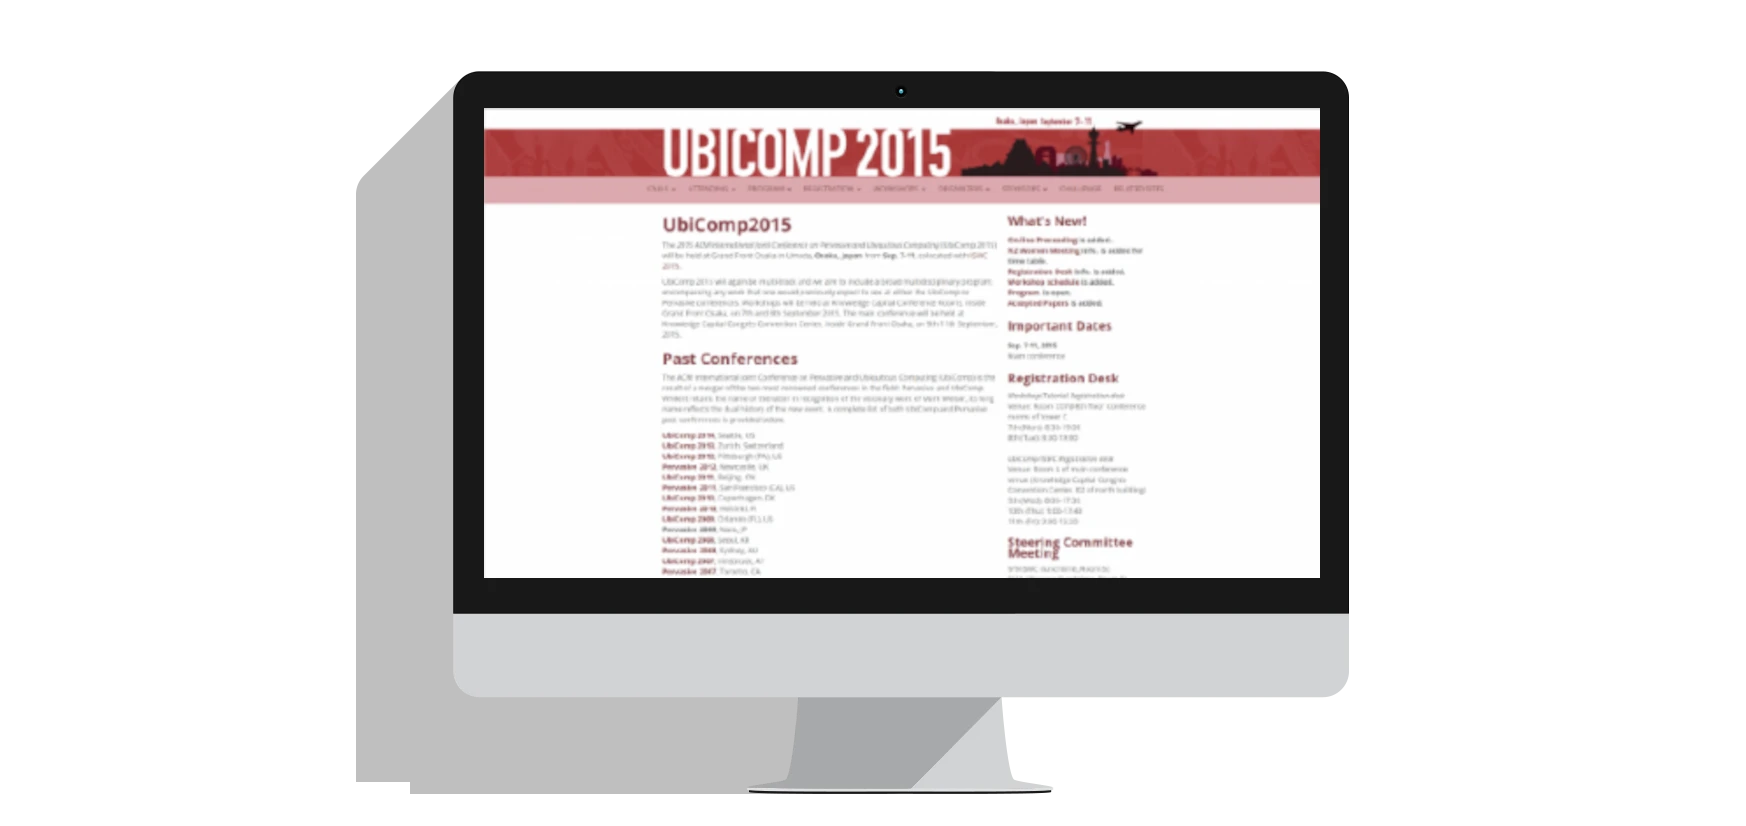 UBICOMP2015